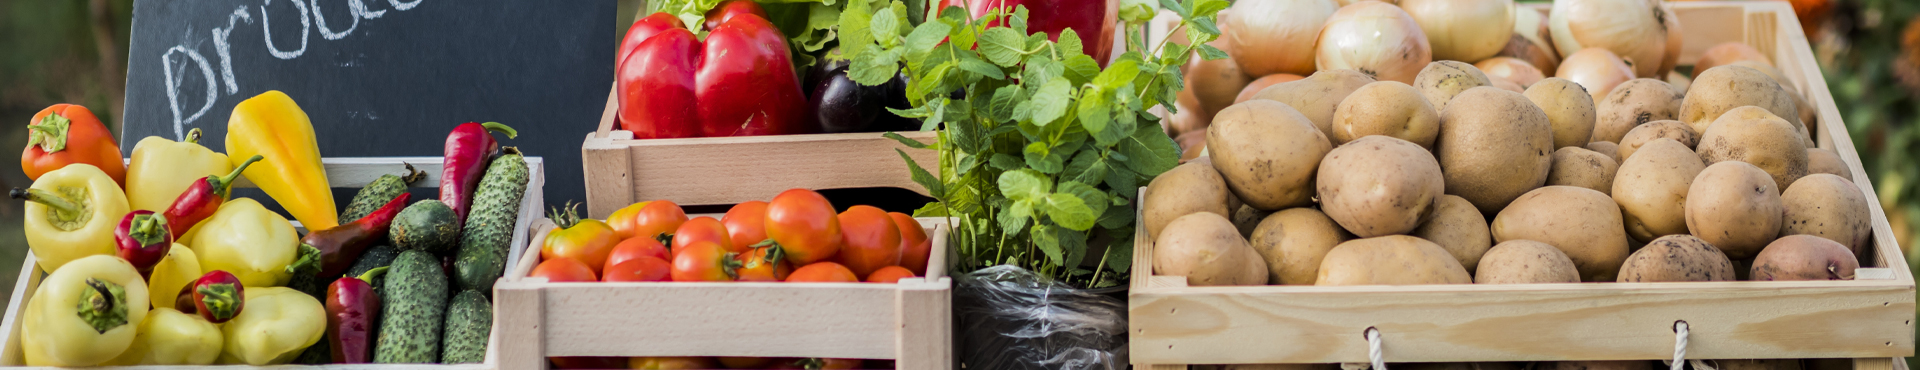 Warzywa od lokalnych dostawców- dlaczego warto zamawiać?